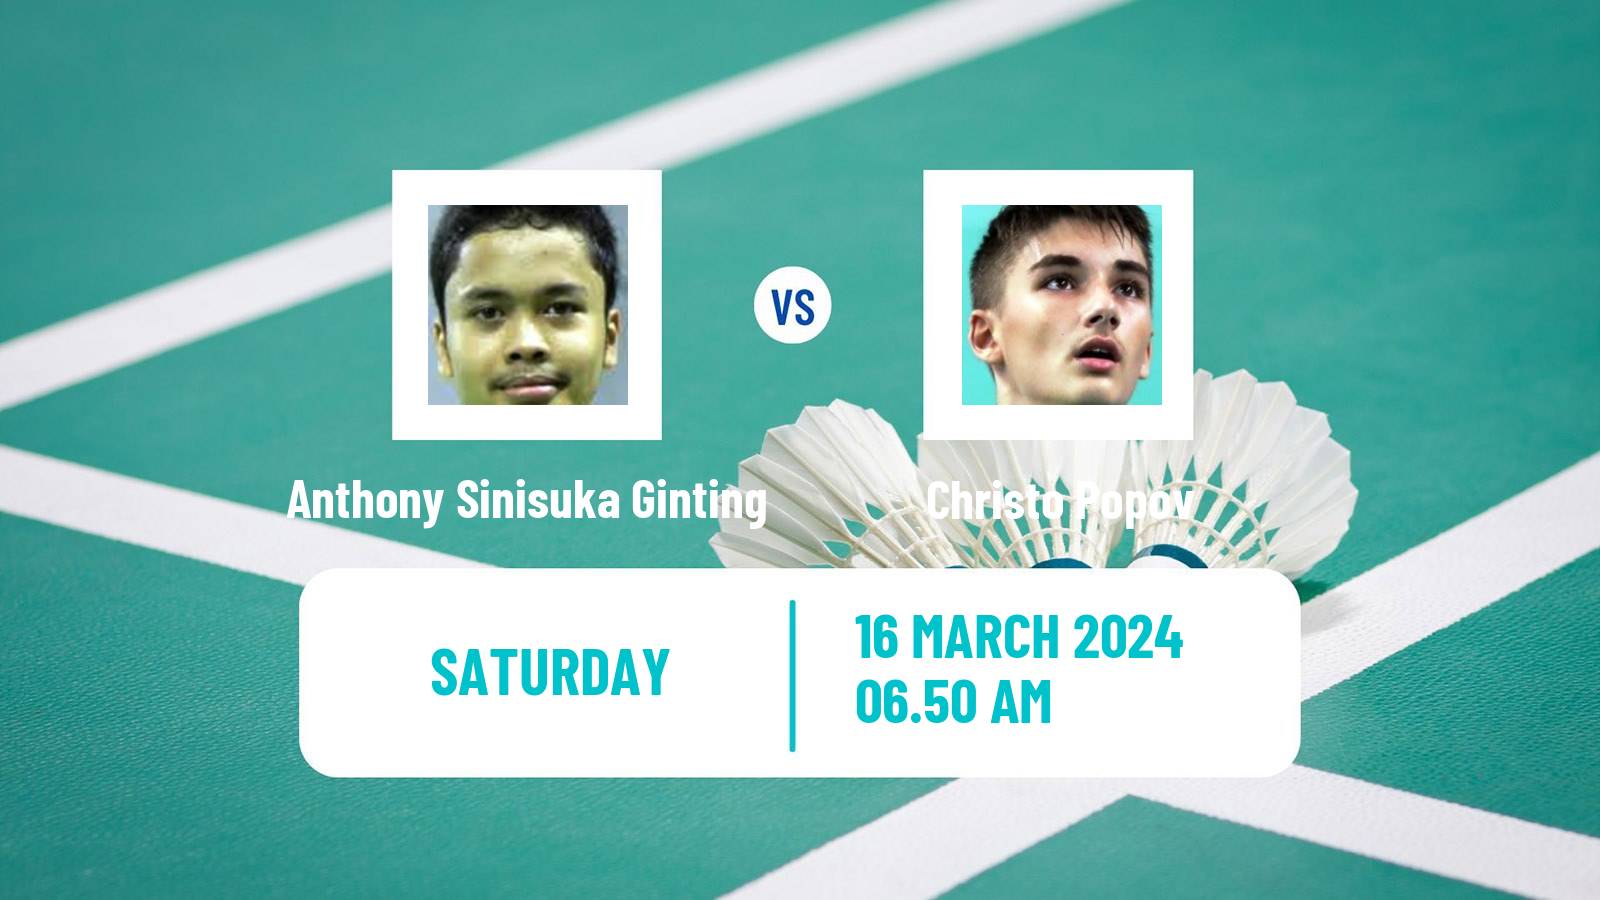 Badminton BWF World Tour All England Open Men Anthony Sinisuka Ginting - Christo Popov